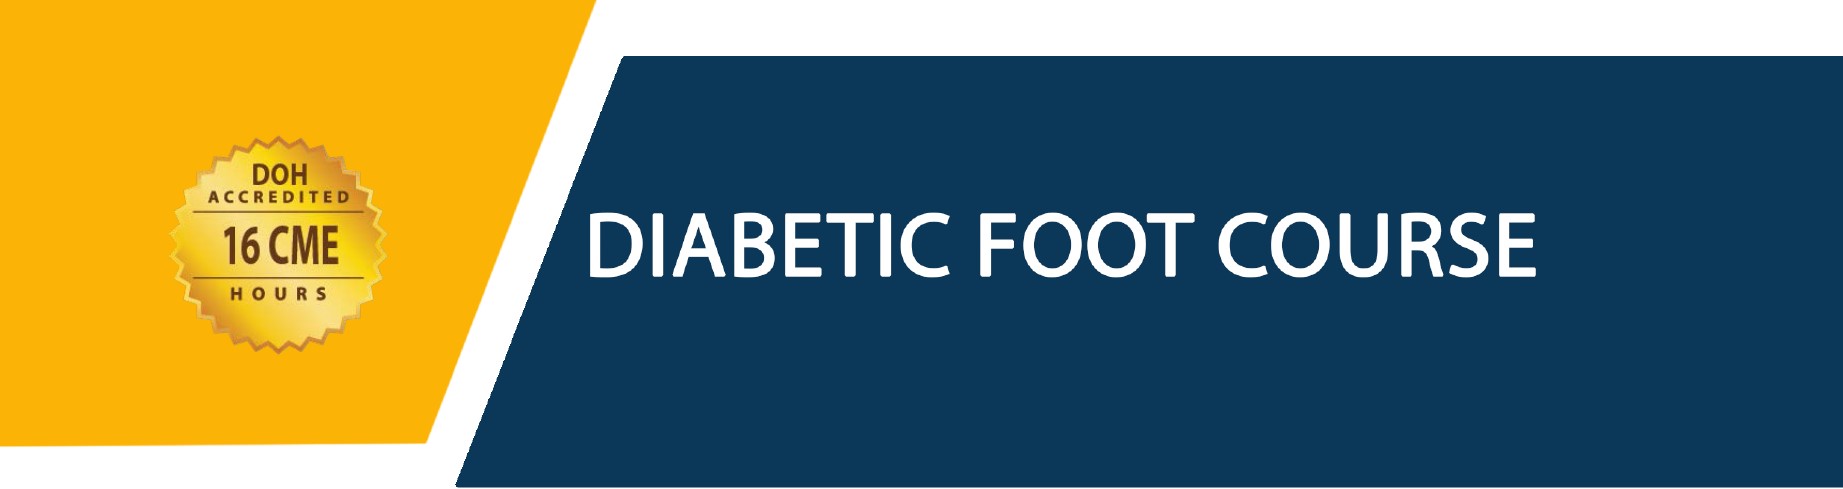 Diabetic Foot Course 